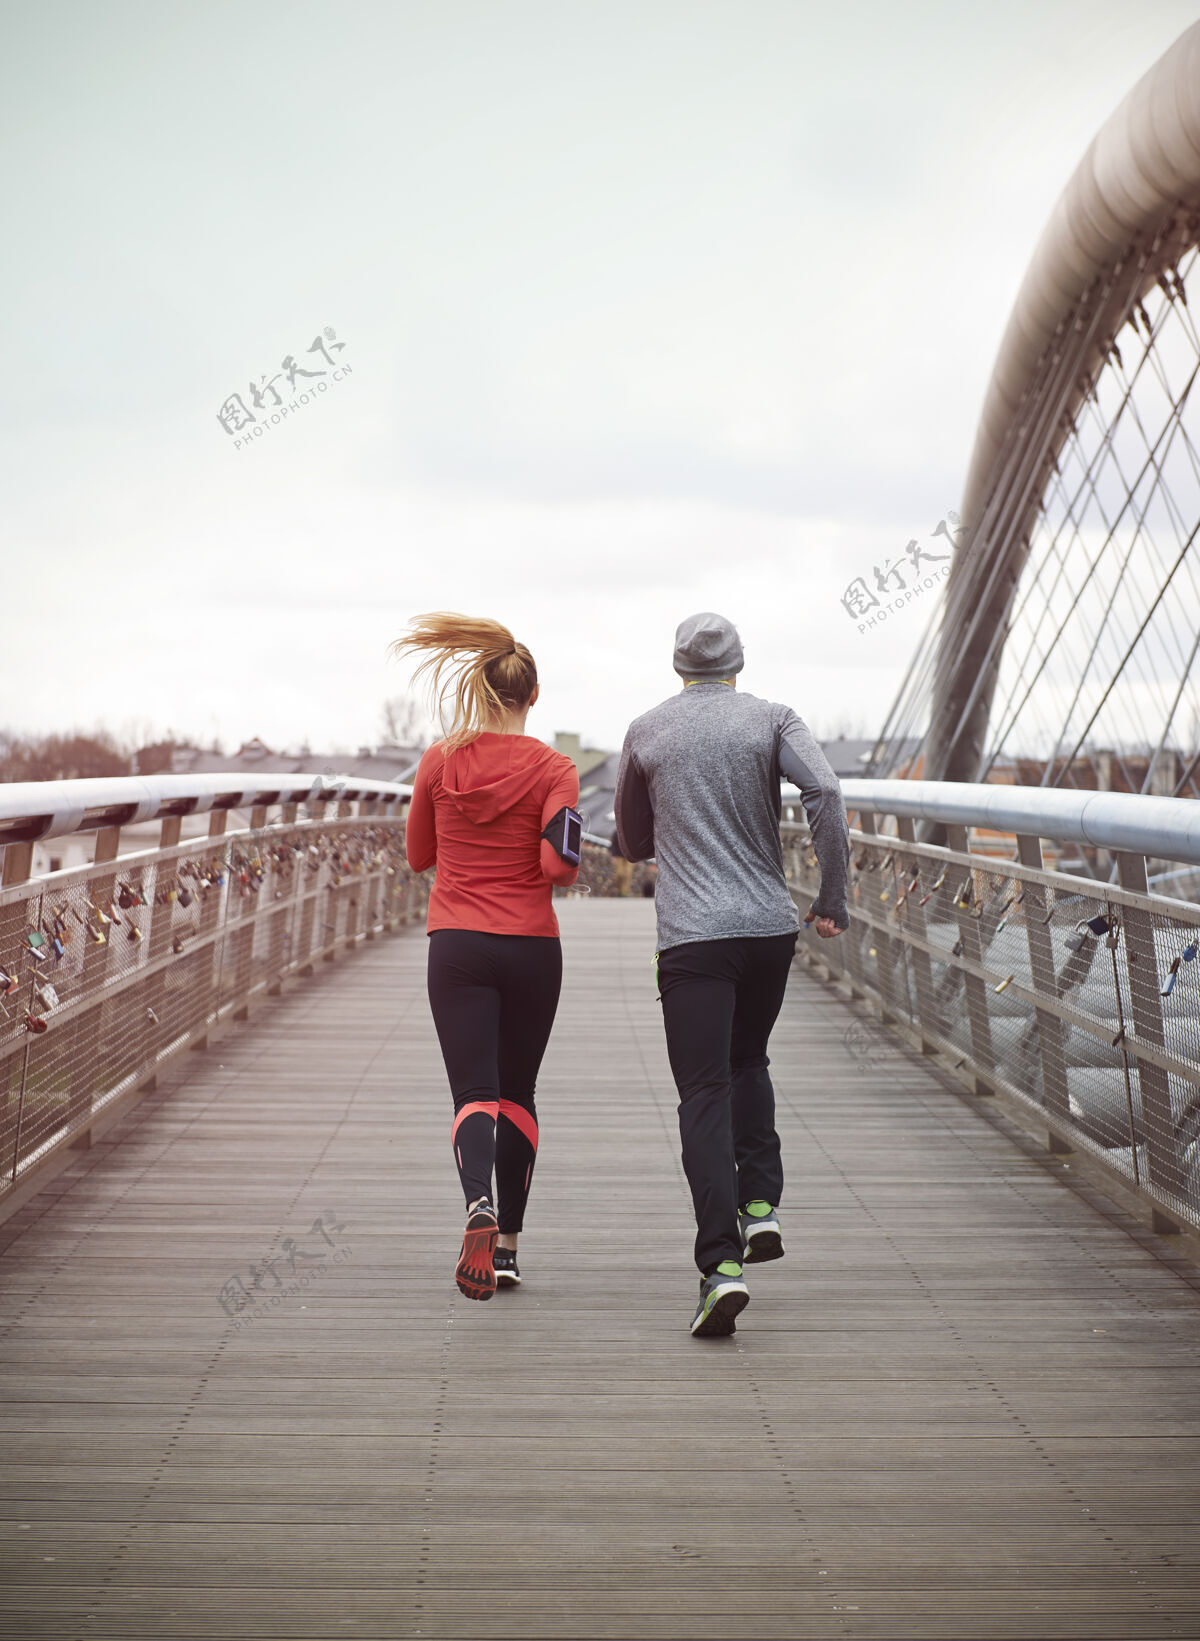 团结跑步是他们的生活方式城市场景速度锻炼